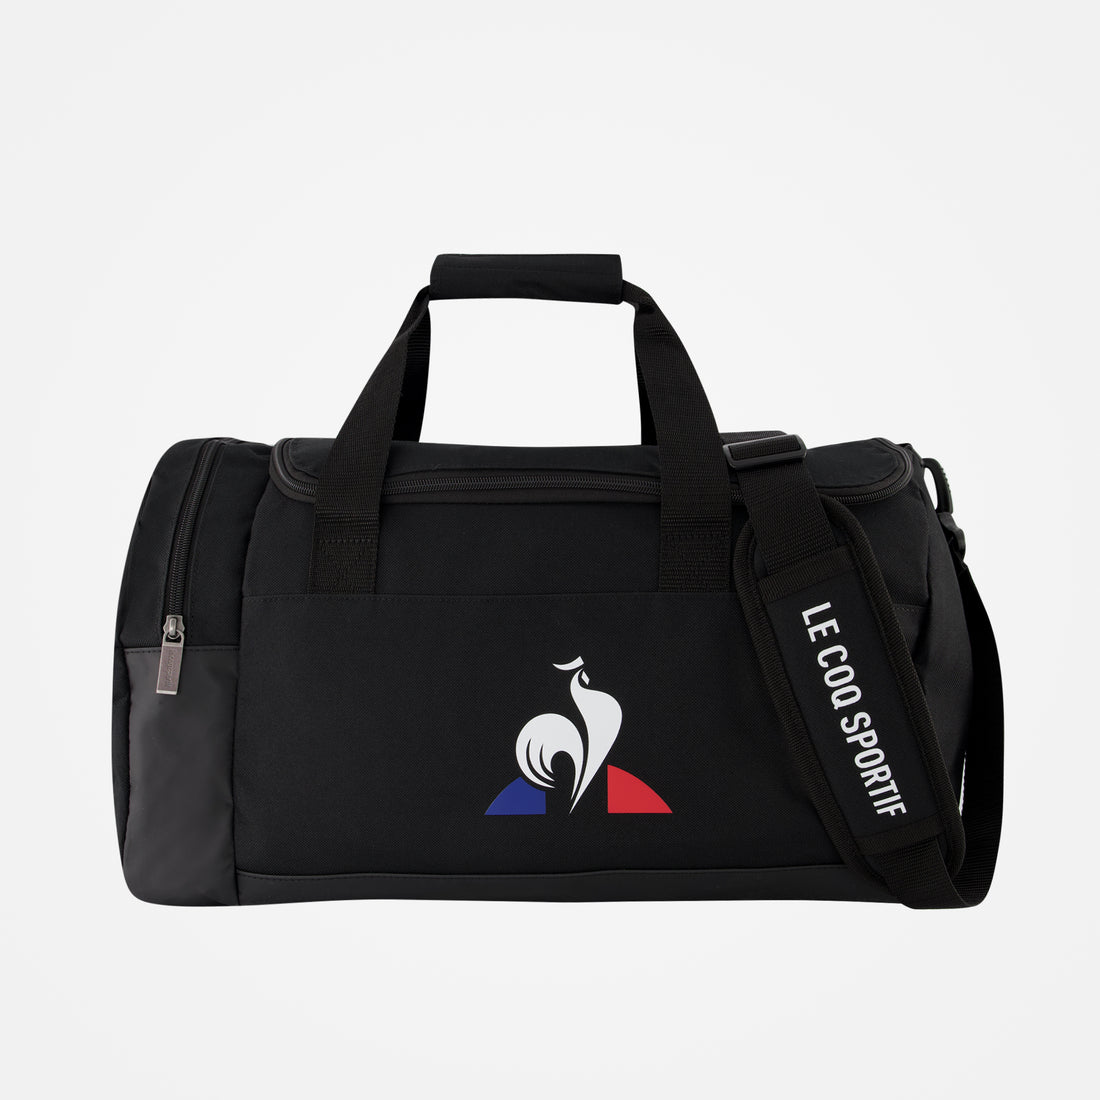 2020927-TRAINING Sportbag S/M black  | Borsa de sport